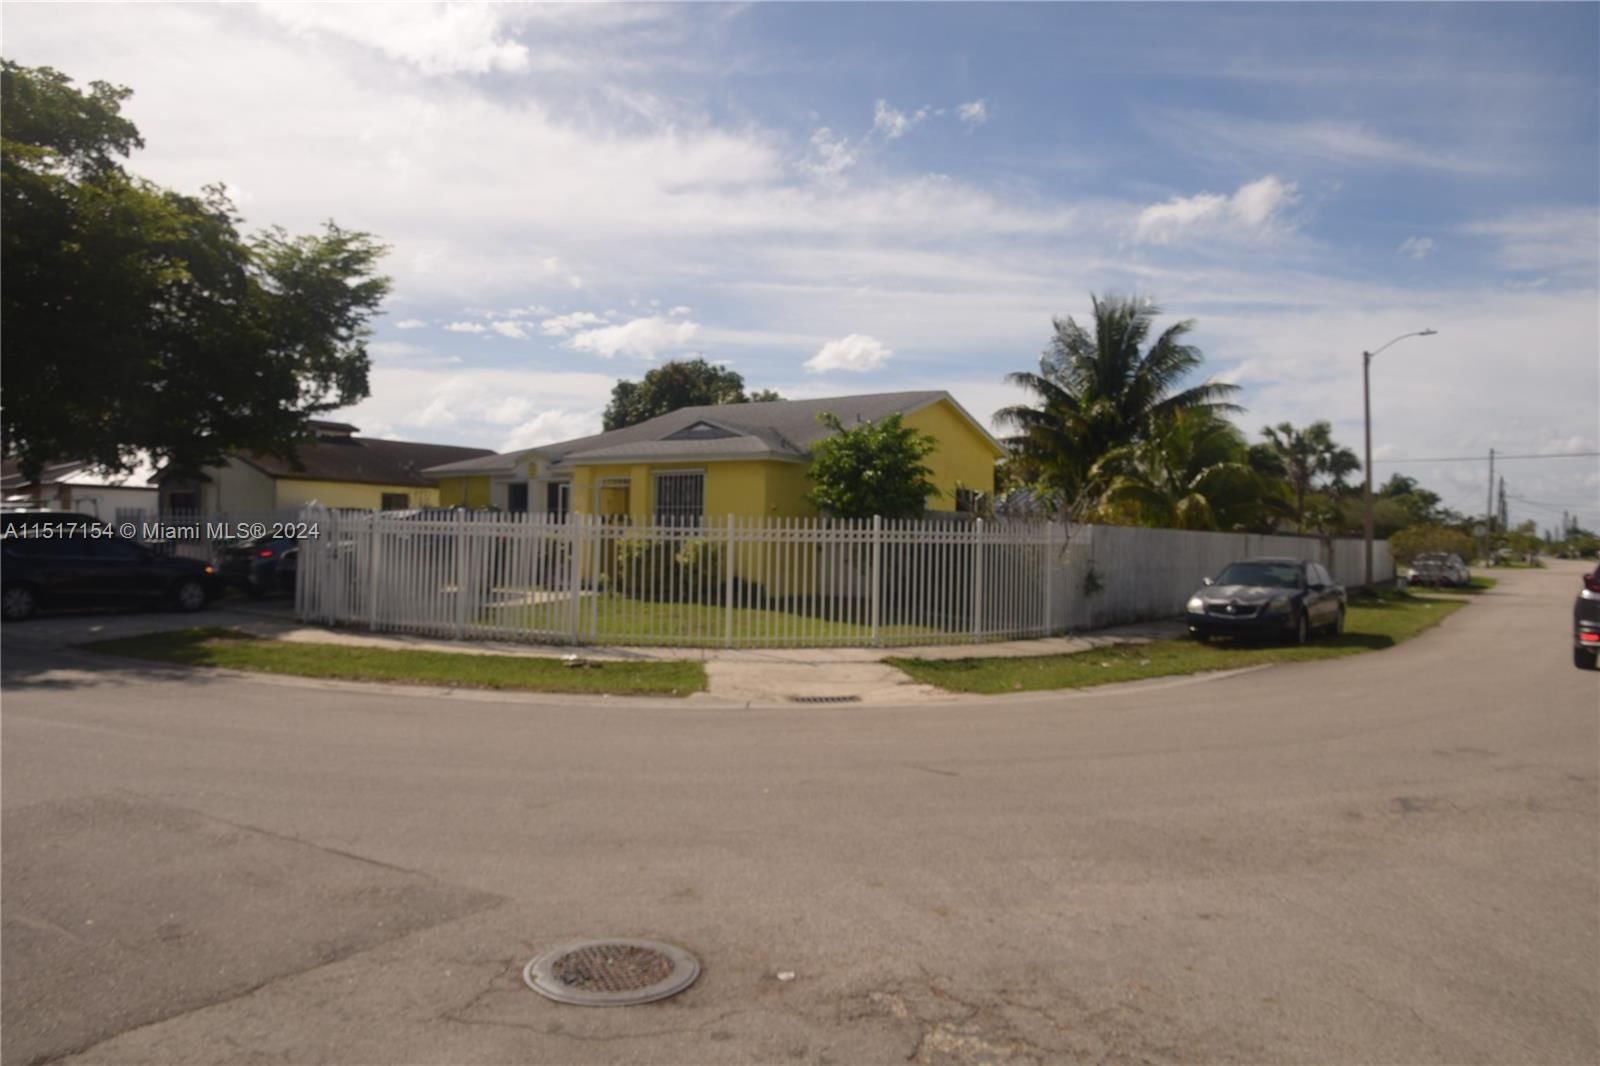 Real estate property located at 18500 114th Ct, Miami-Dade County, GRAPEVINE, Miami, FL